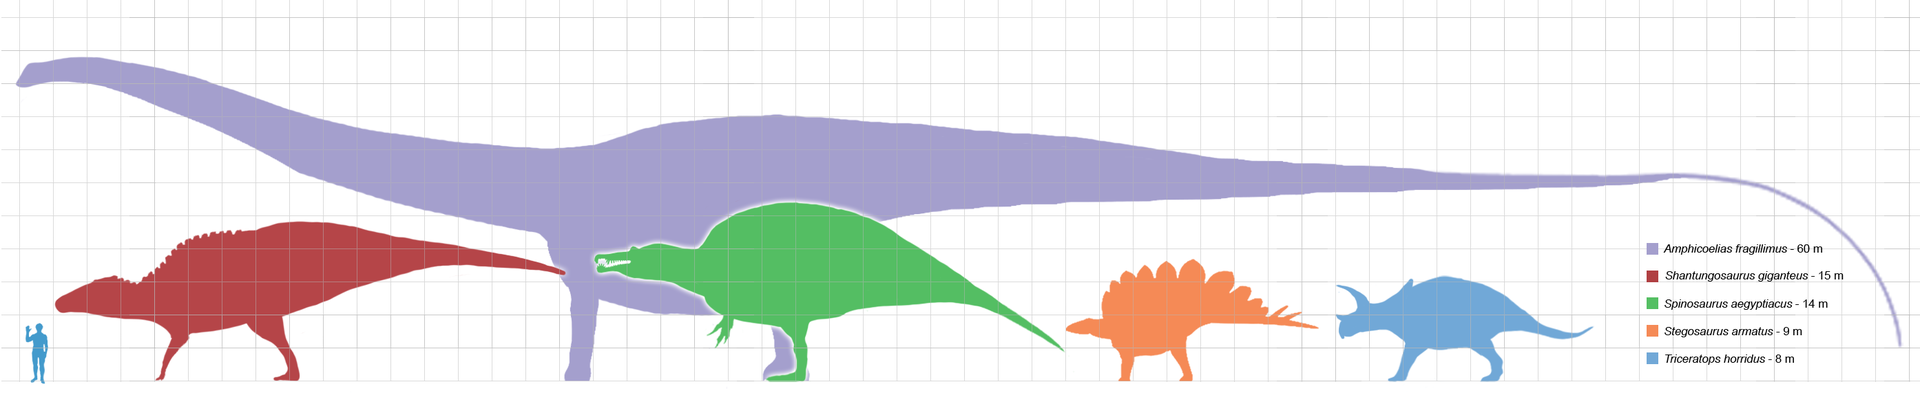 Largestdinosaursbysuborder_scale